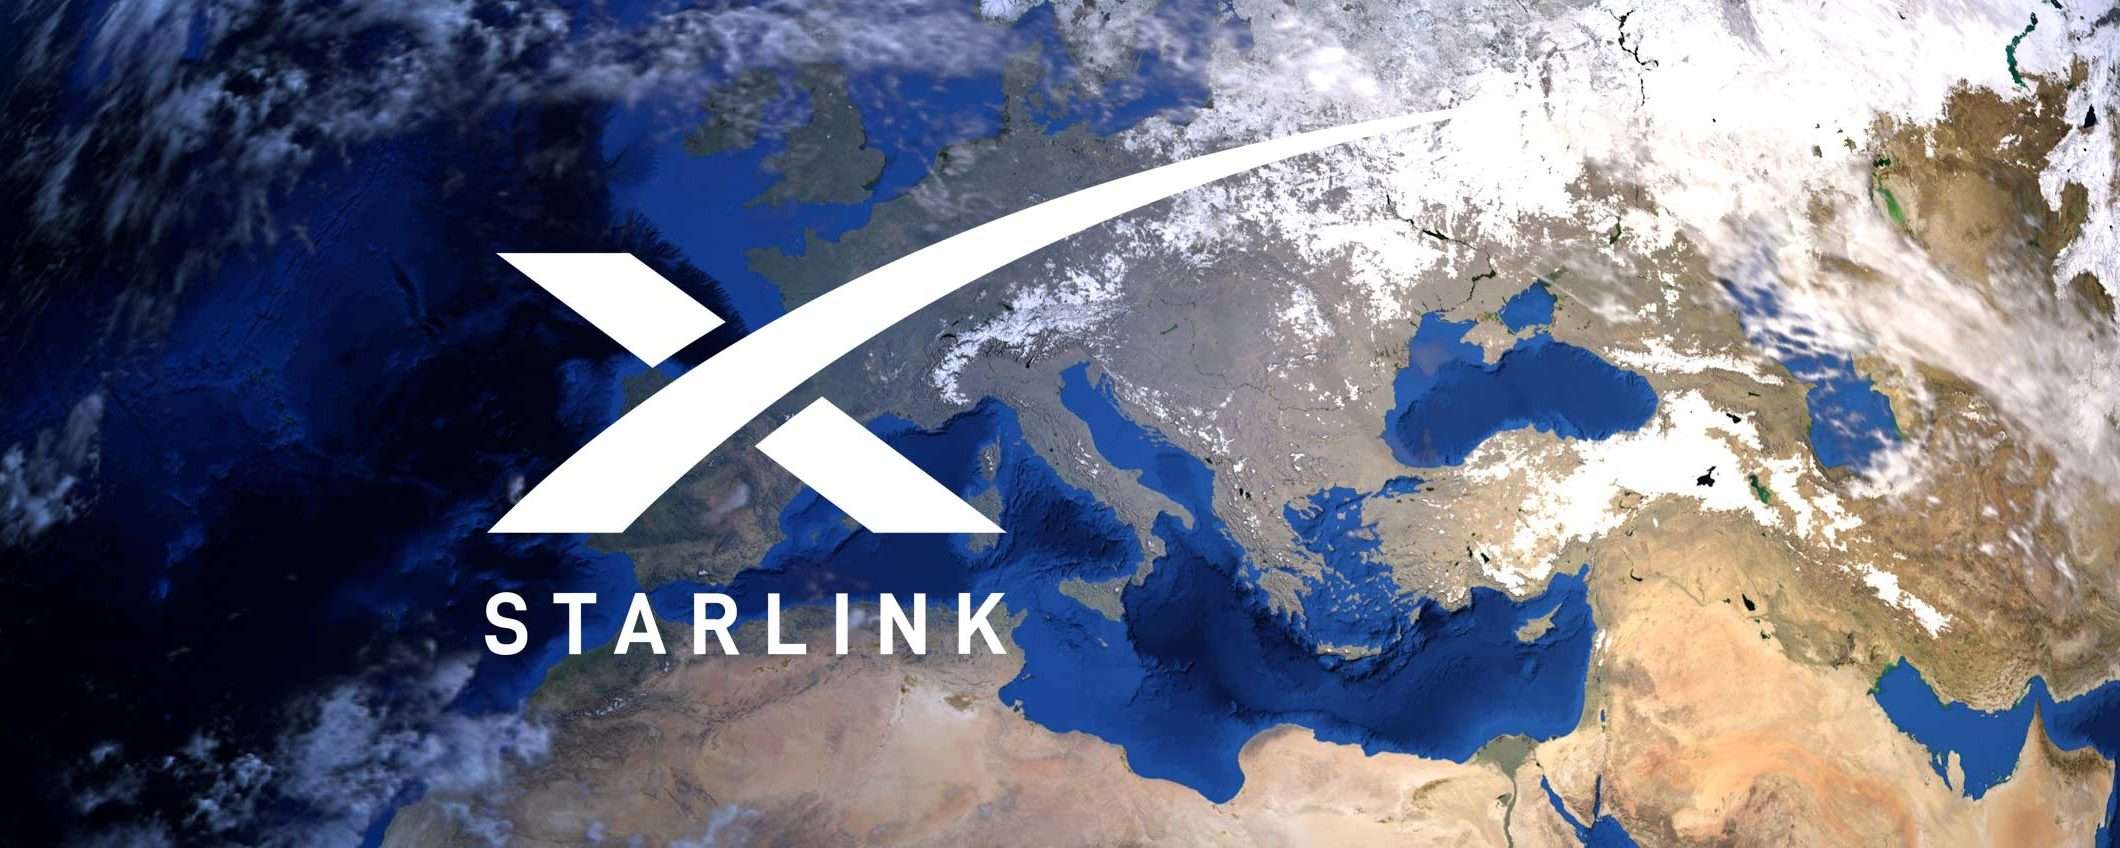 Starlink: velocità superiore alla banda larga in Italia